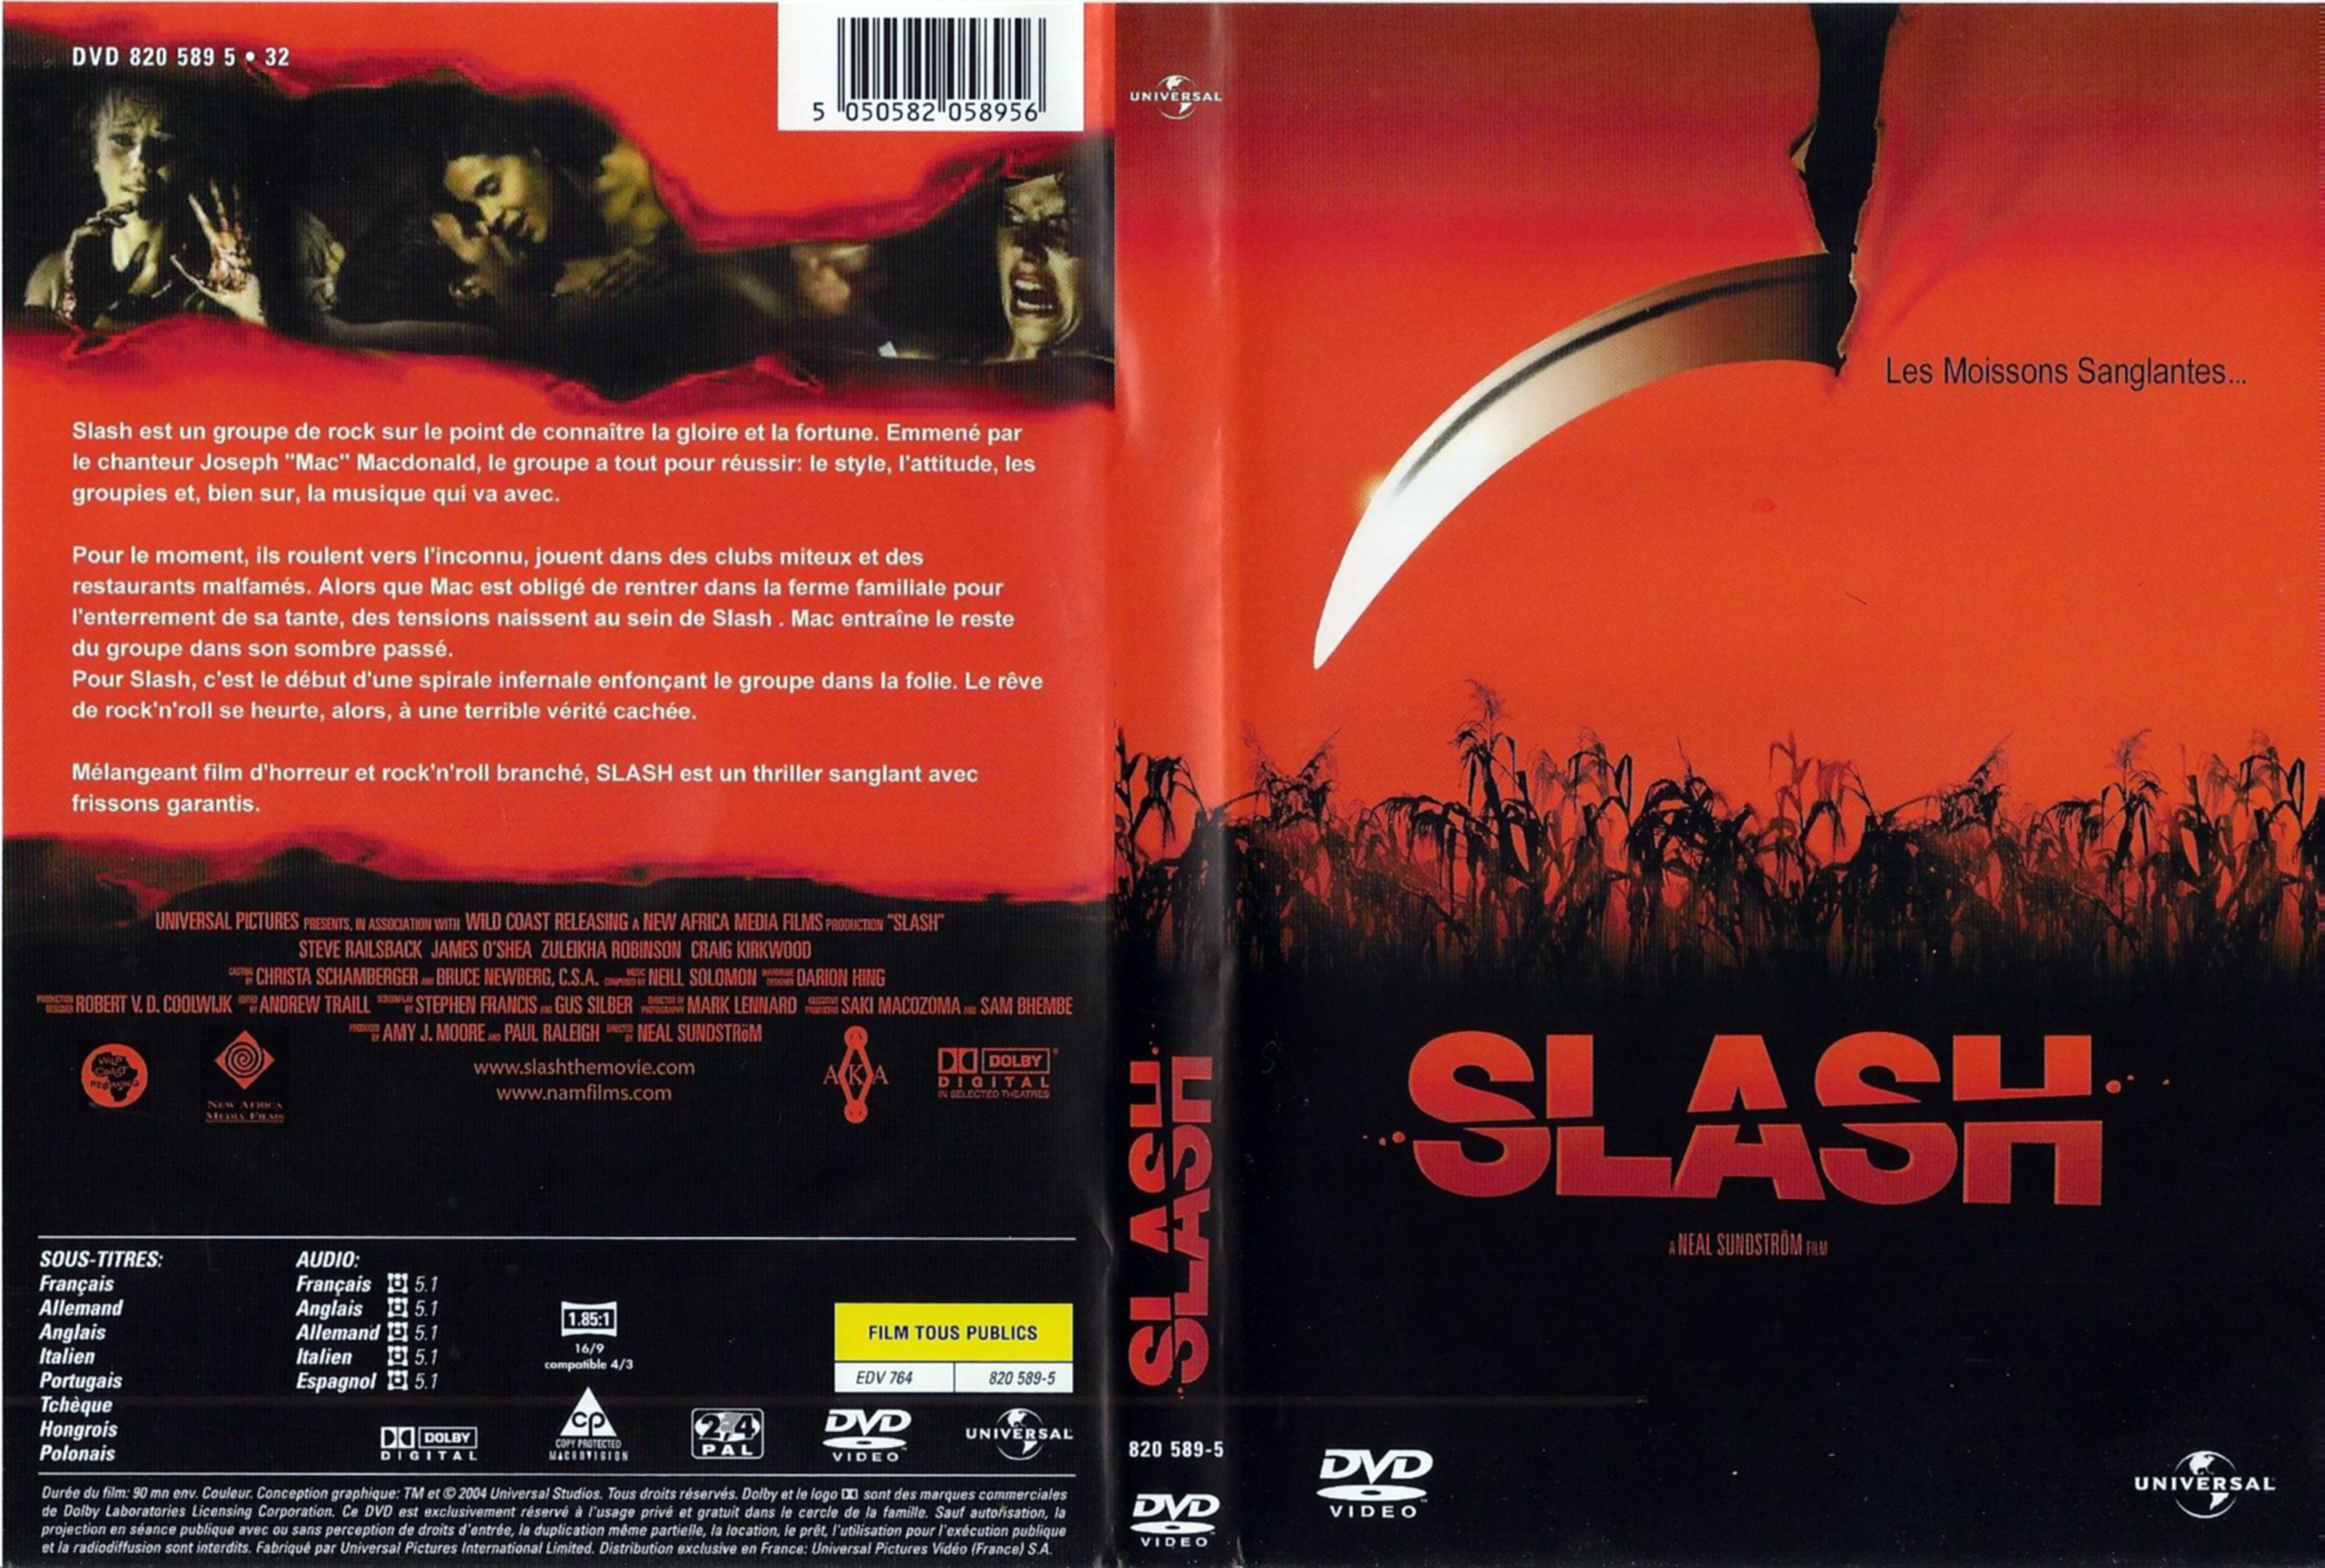 Jaquette DVD Slash